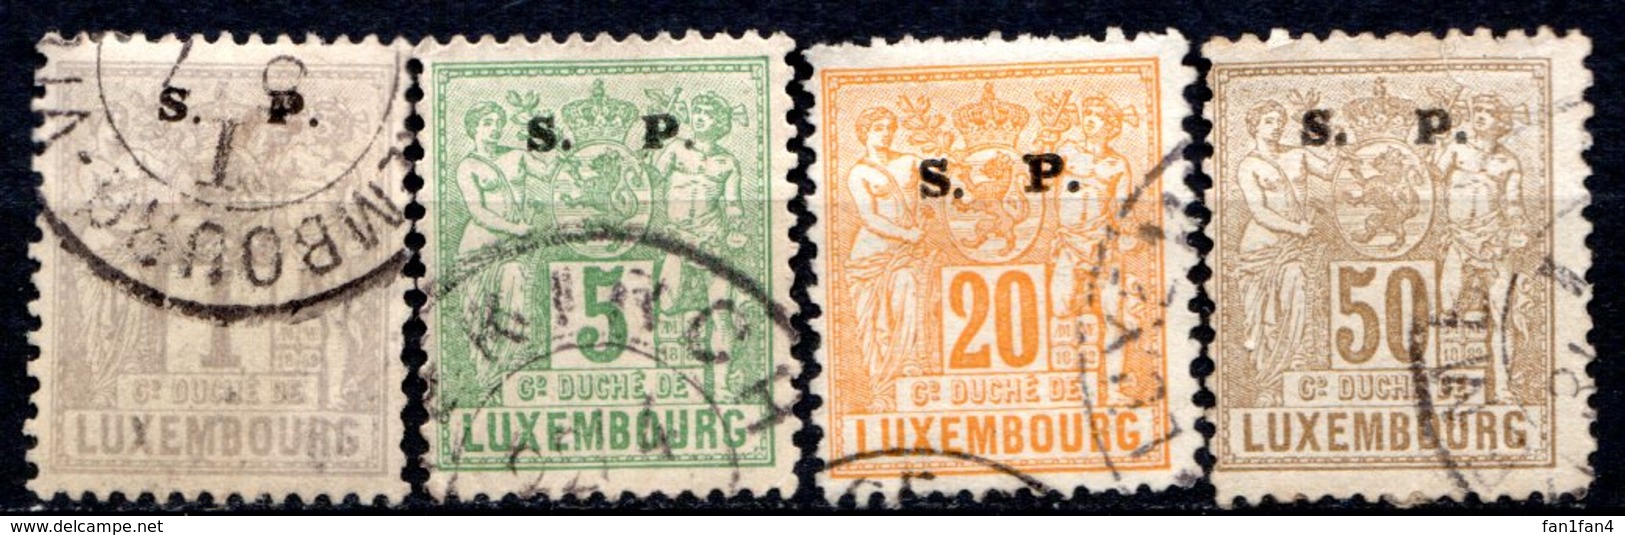 LUXEMBOURG - 1882-83 - N° 54 à 63 - (Lot De 4 Valeurs Différentes) - (Surchargé : S.   P.) - Service